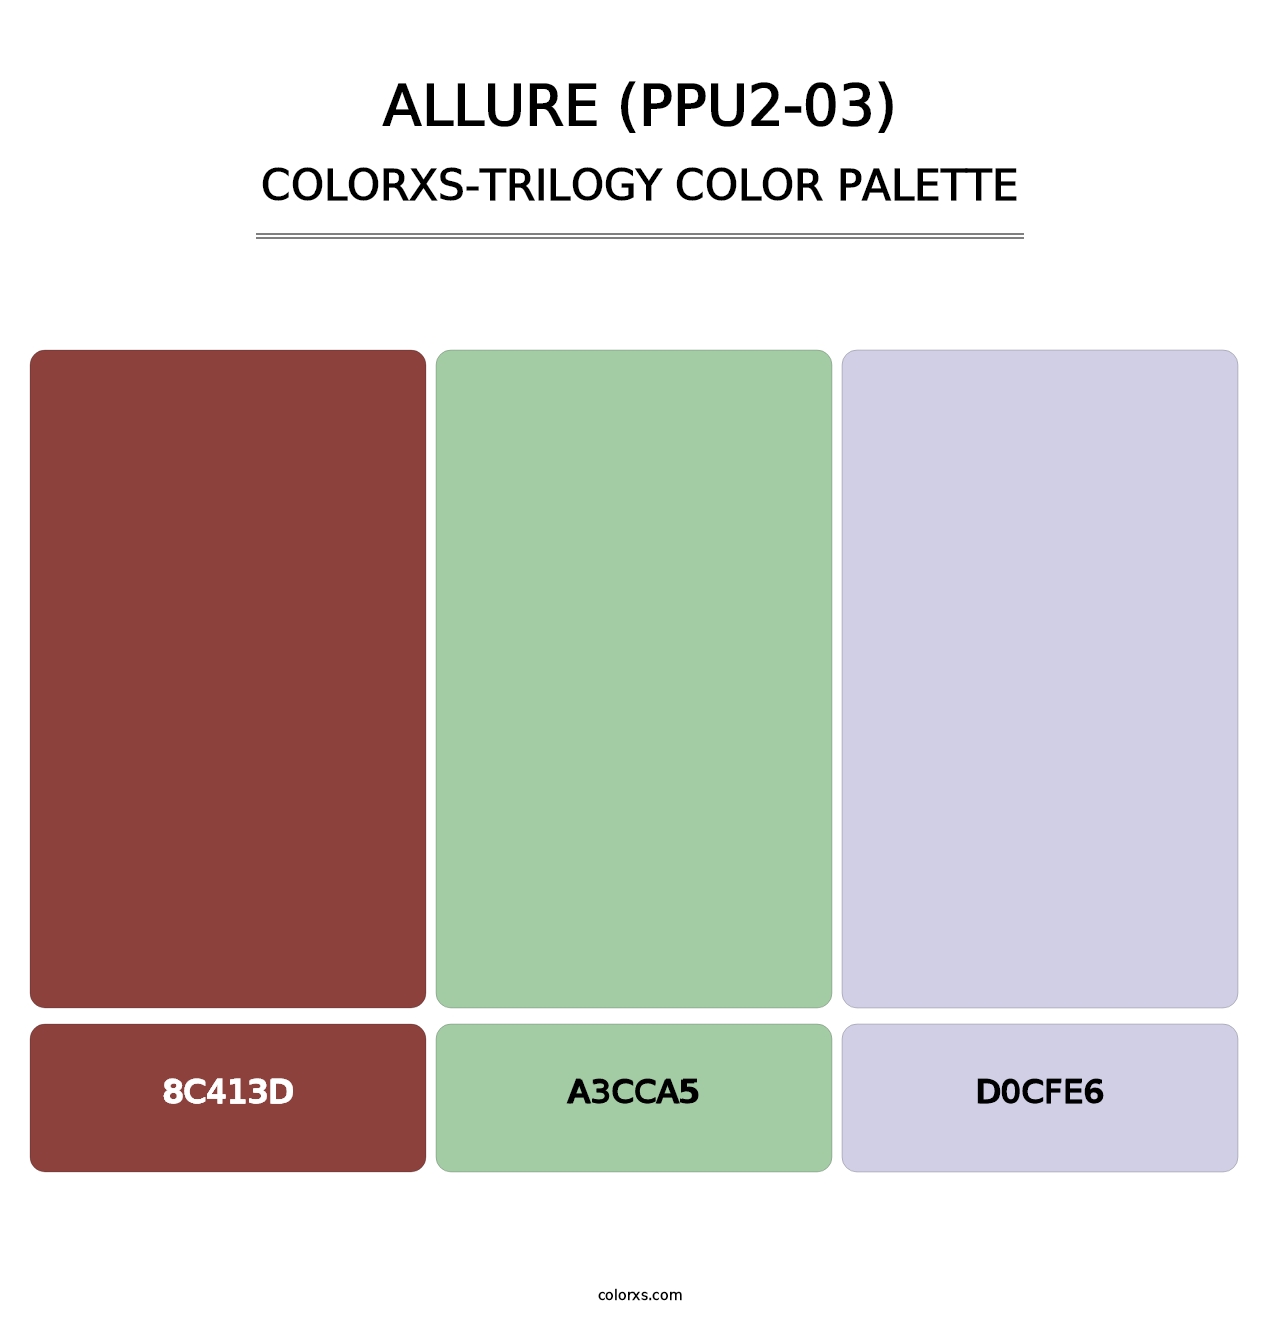 Allure (PPU2-03) - Colorxs Trilogy Palette